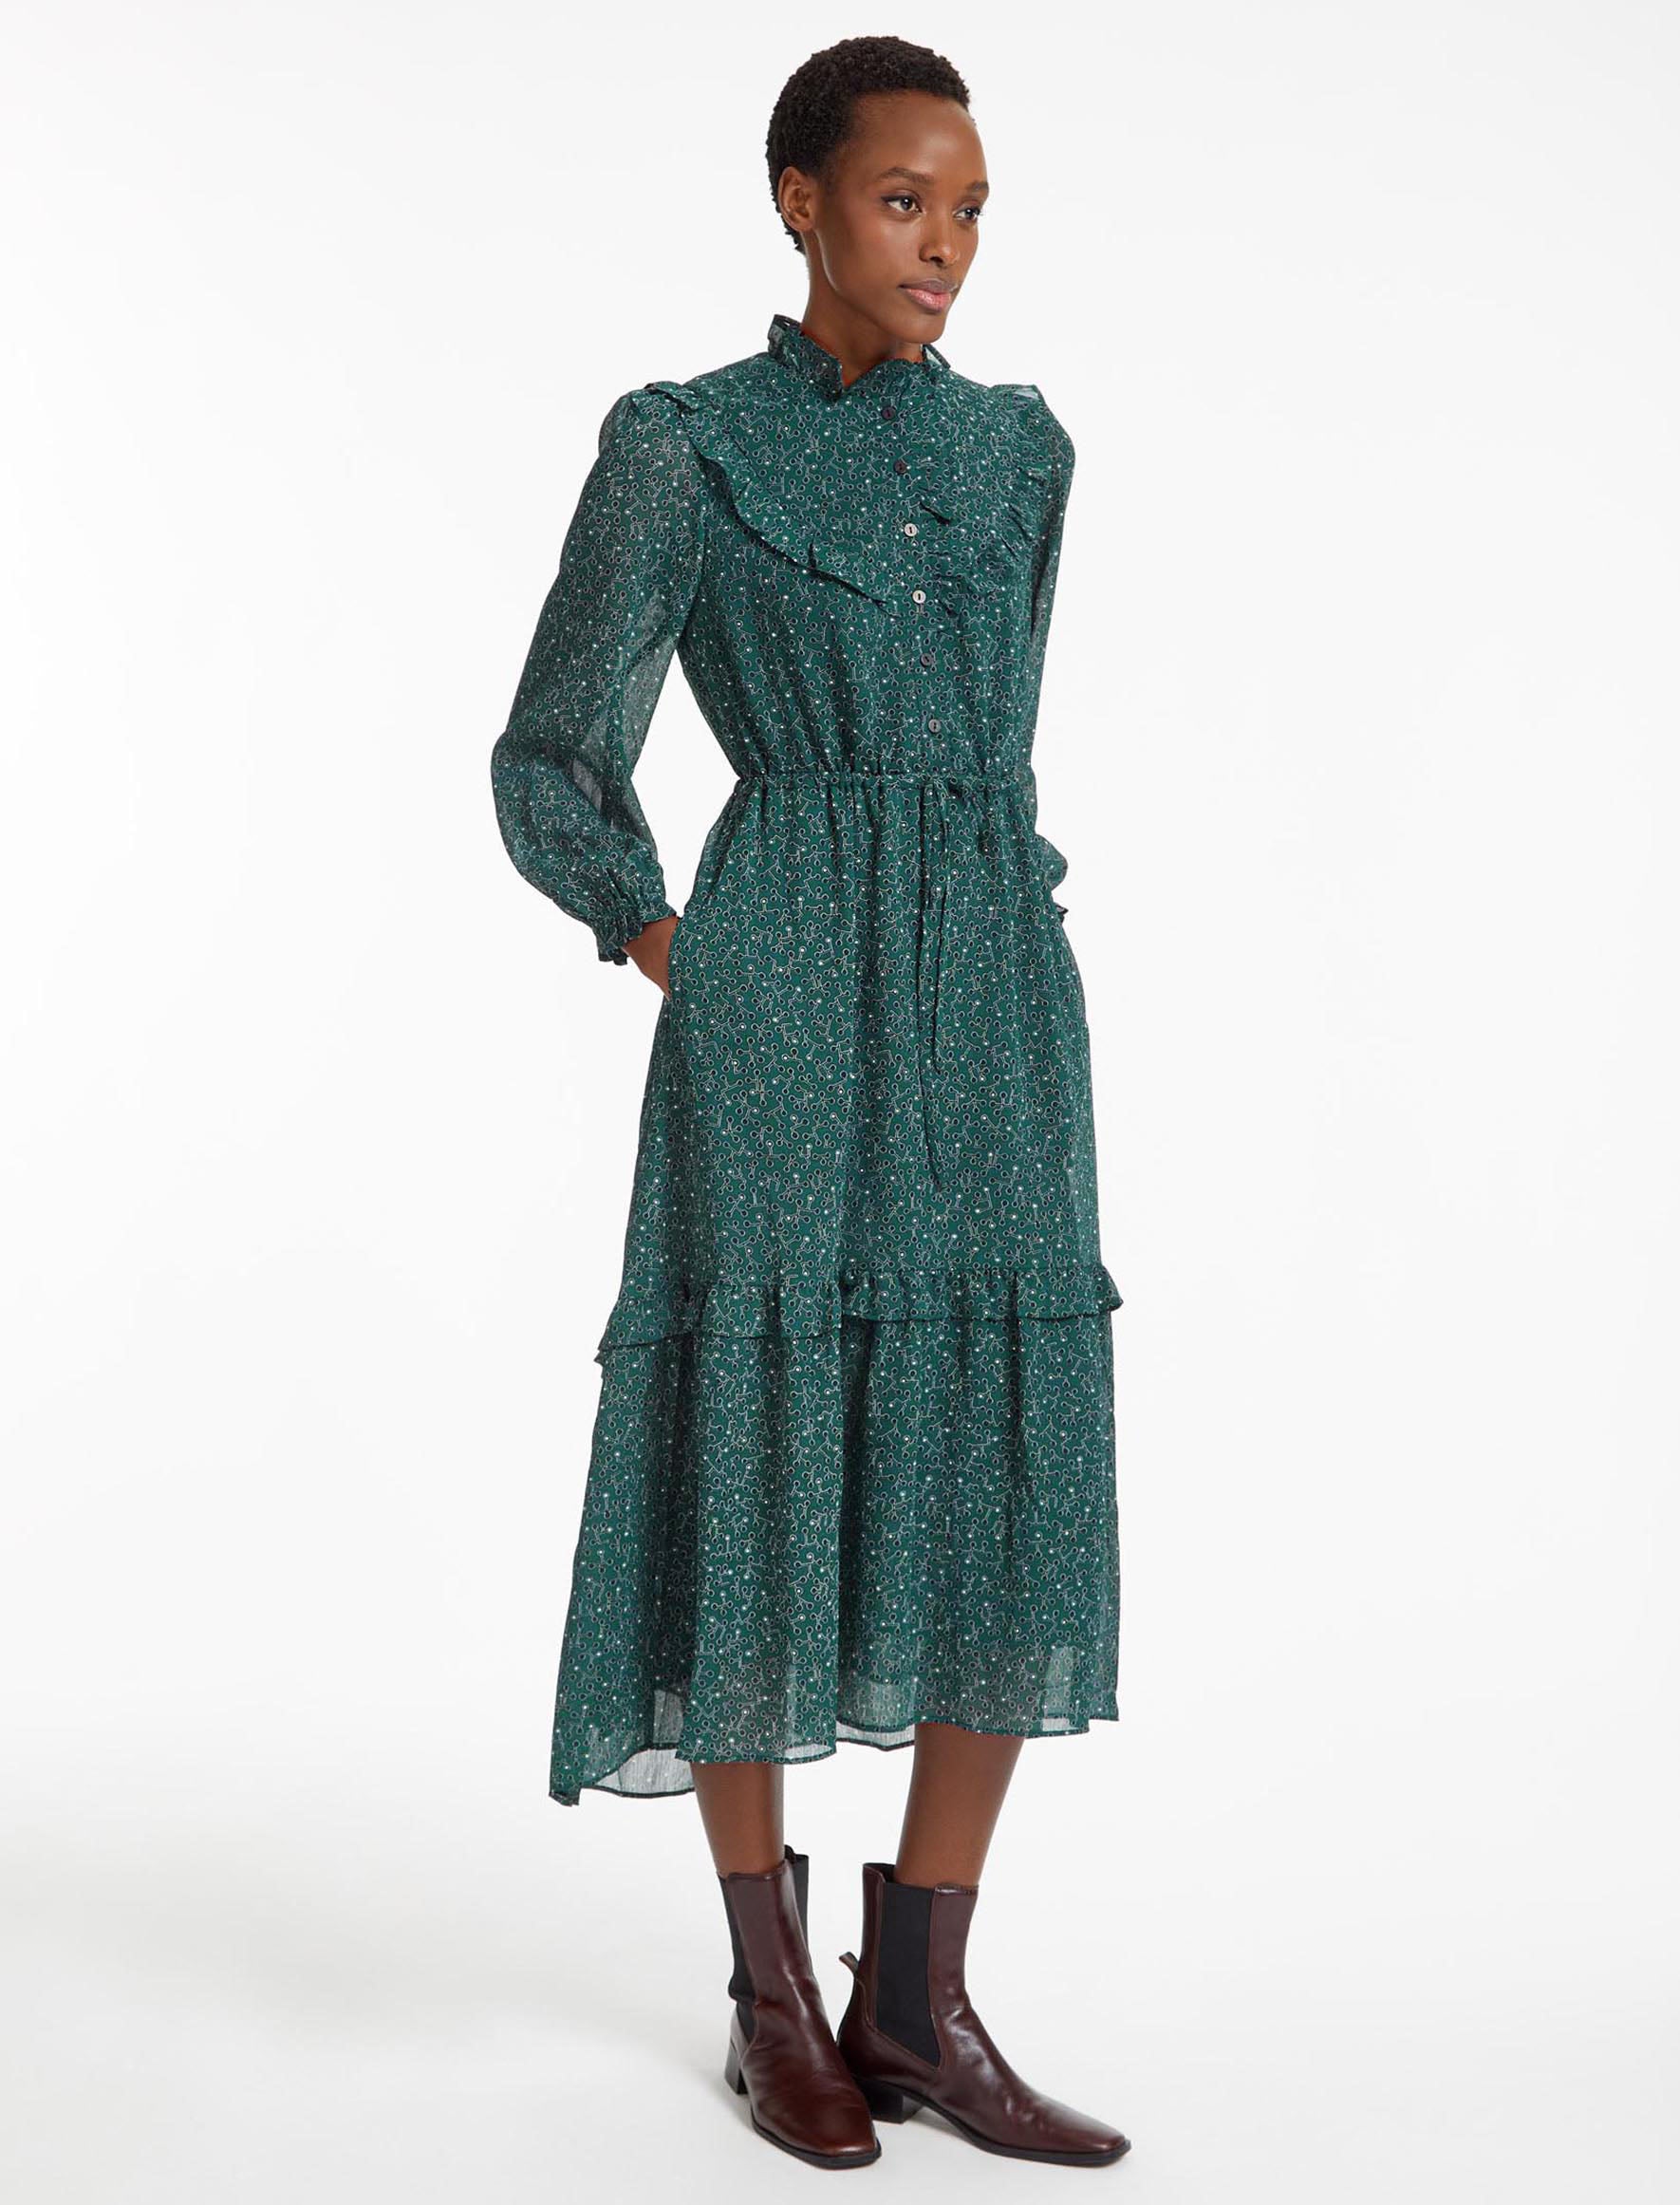 Cefinn Annie Midi Dress with Drawstring Waist - Green Black Graphic Coral Print